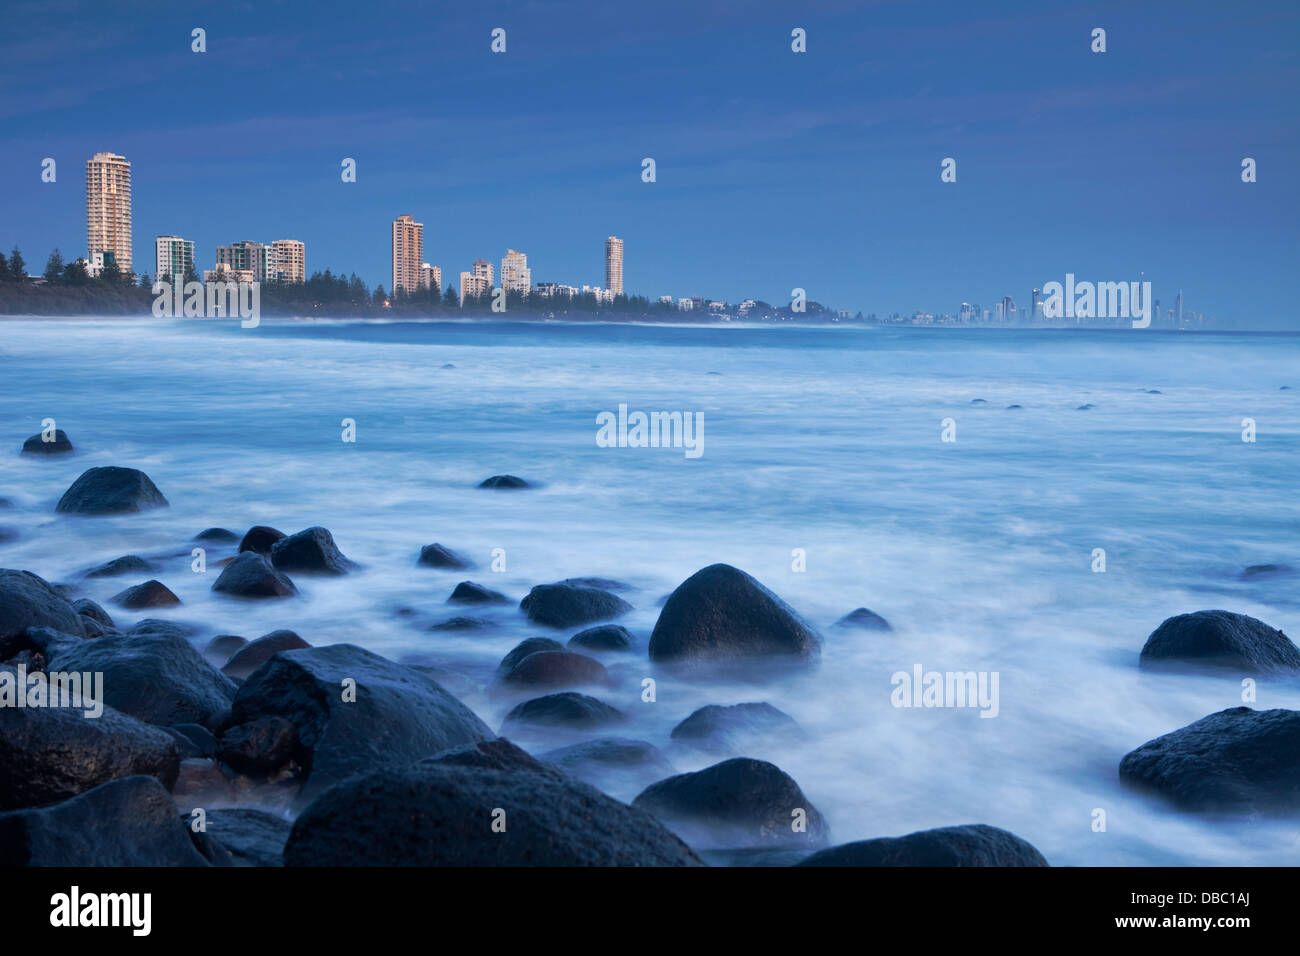 Afficher le long de la côte, au crépuscule, vu de Burleigh Heads. Burleigh Heads, Gold Coast, Queensland, Australie Banque D'Images